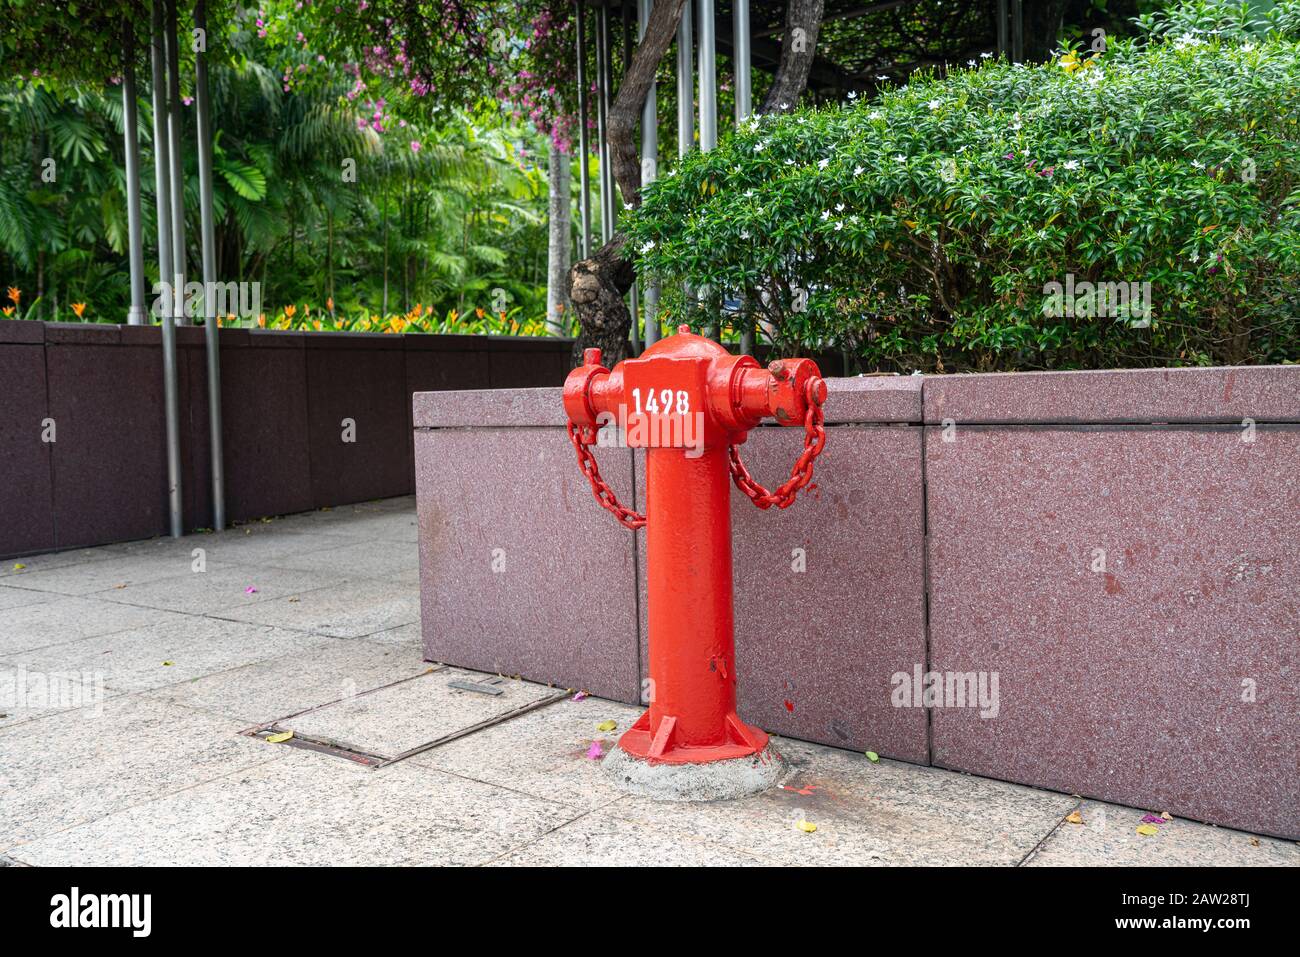 Singapur. 2020 de enero: Un hidrante de fuego rojo en una acera del centro de la ciudad Foto de stock